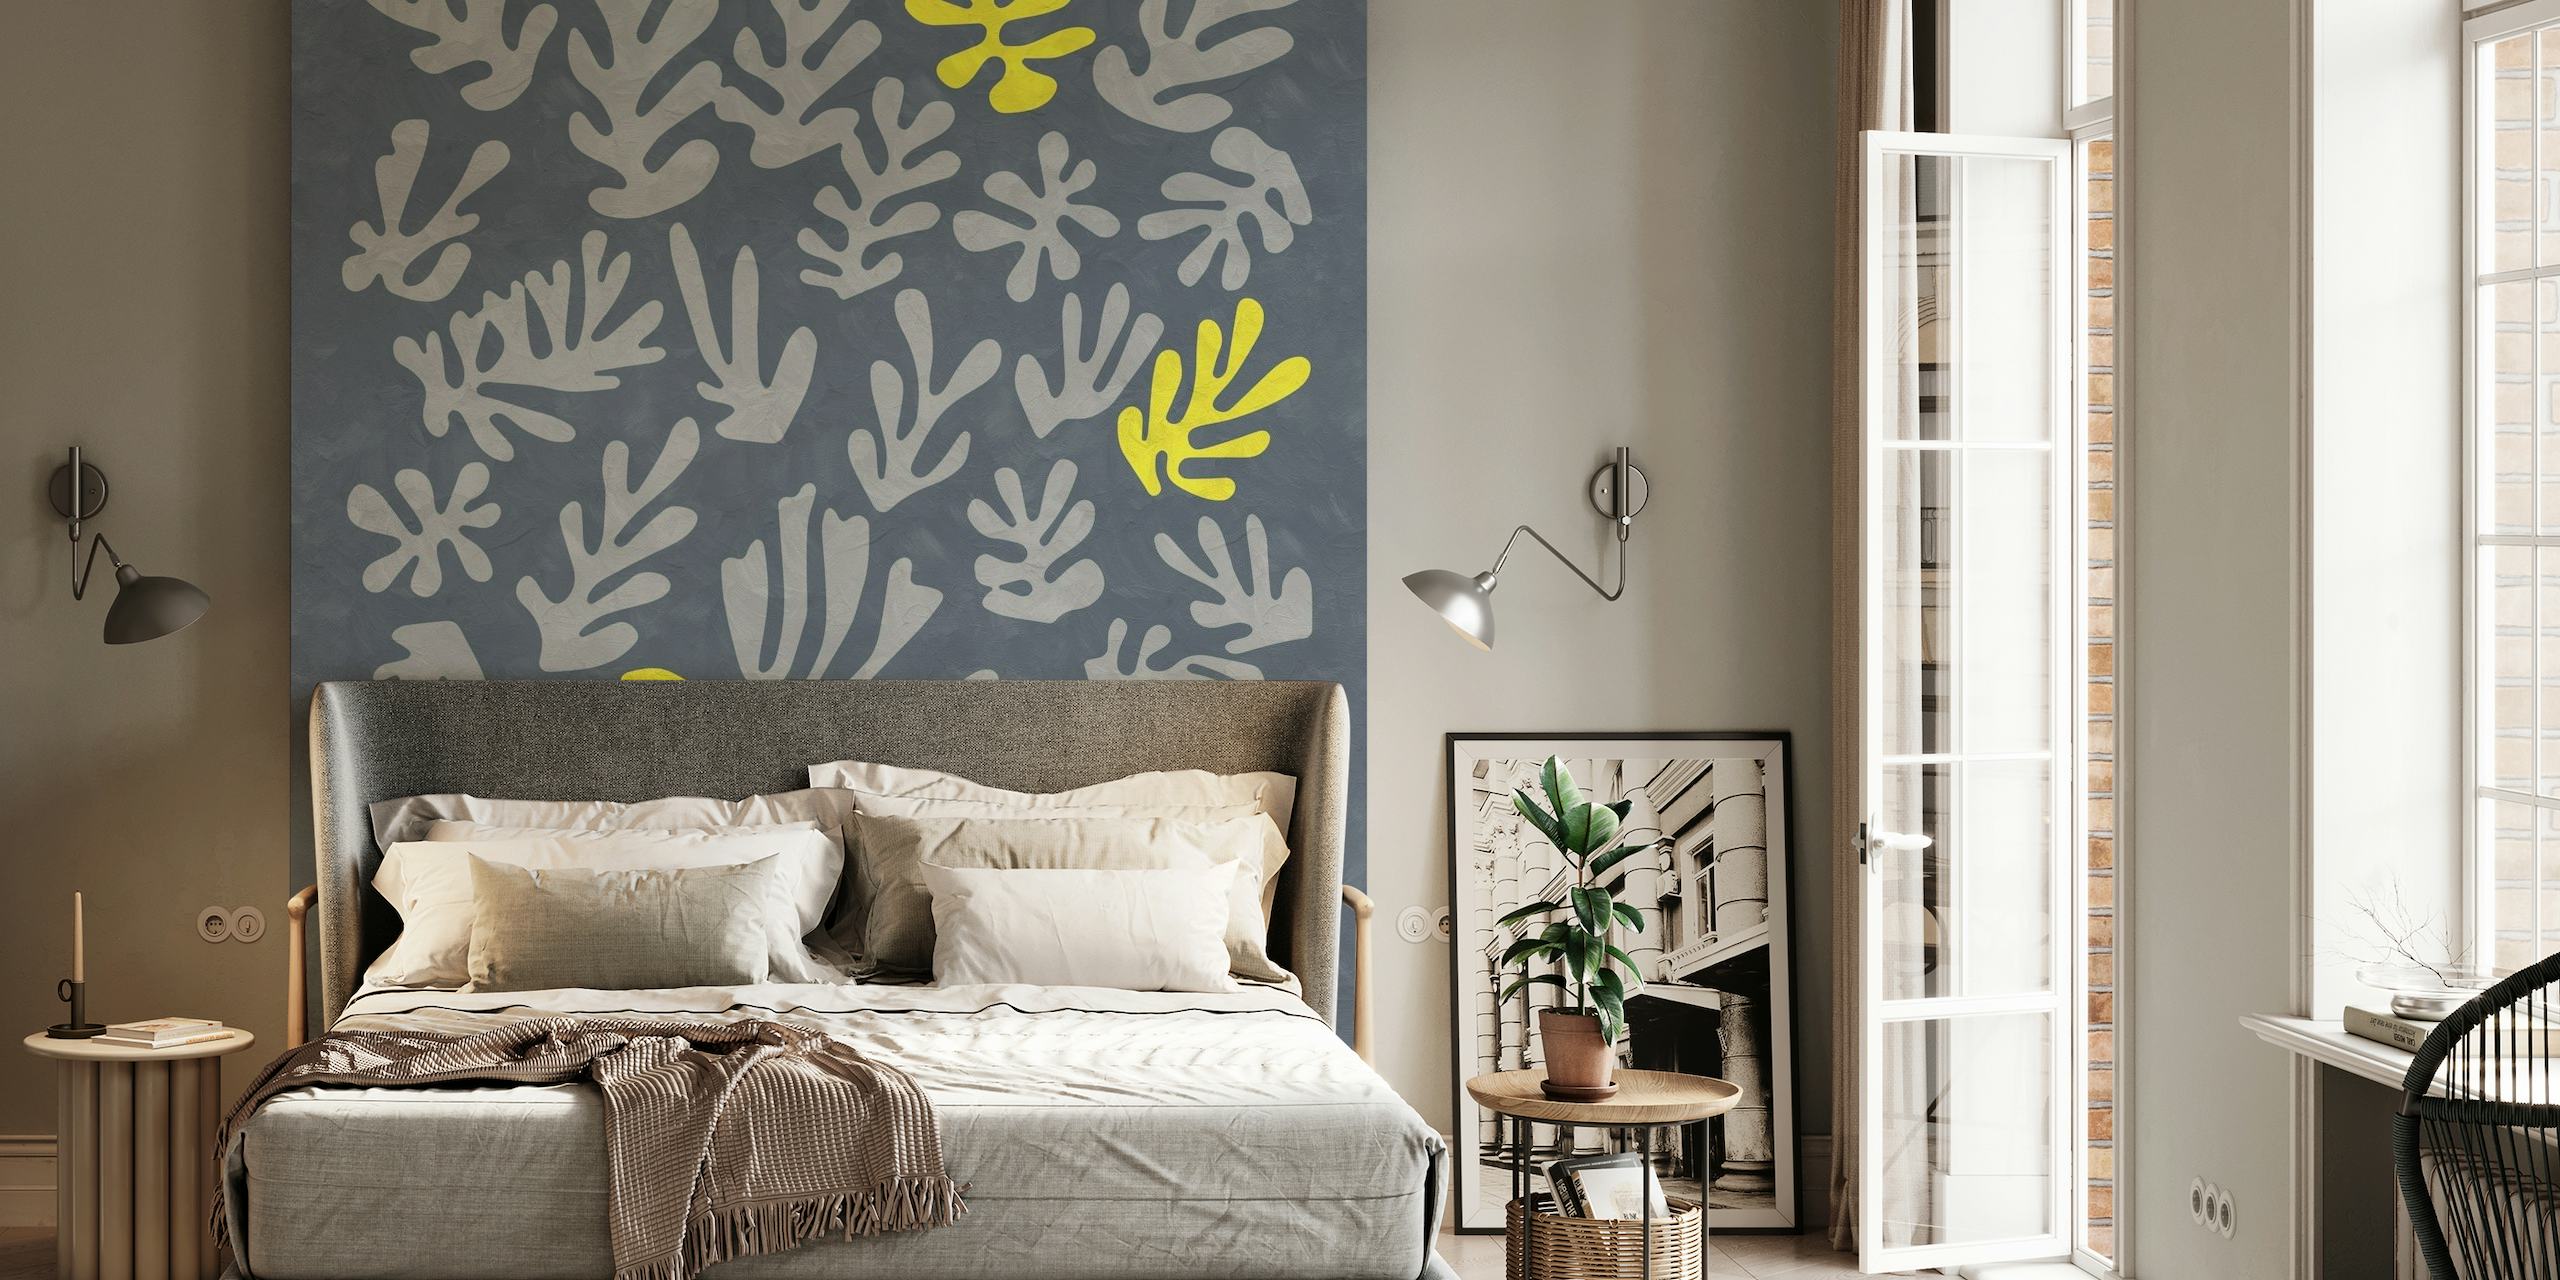 Padrão abstrato botânico amarelo inspirado em Matisse em um fotomural vinílico de fundo cinza